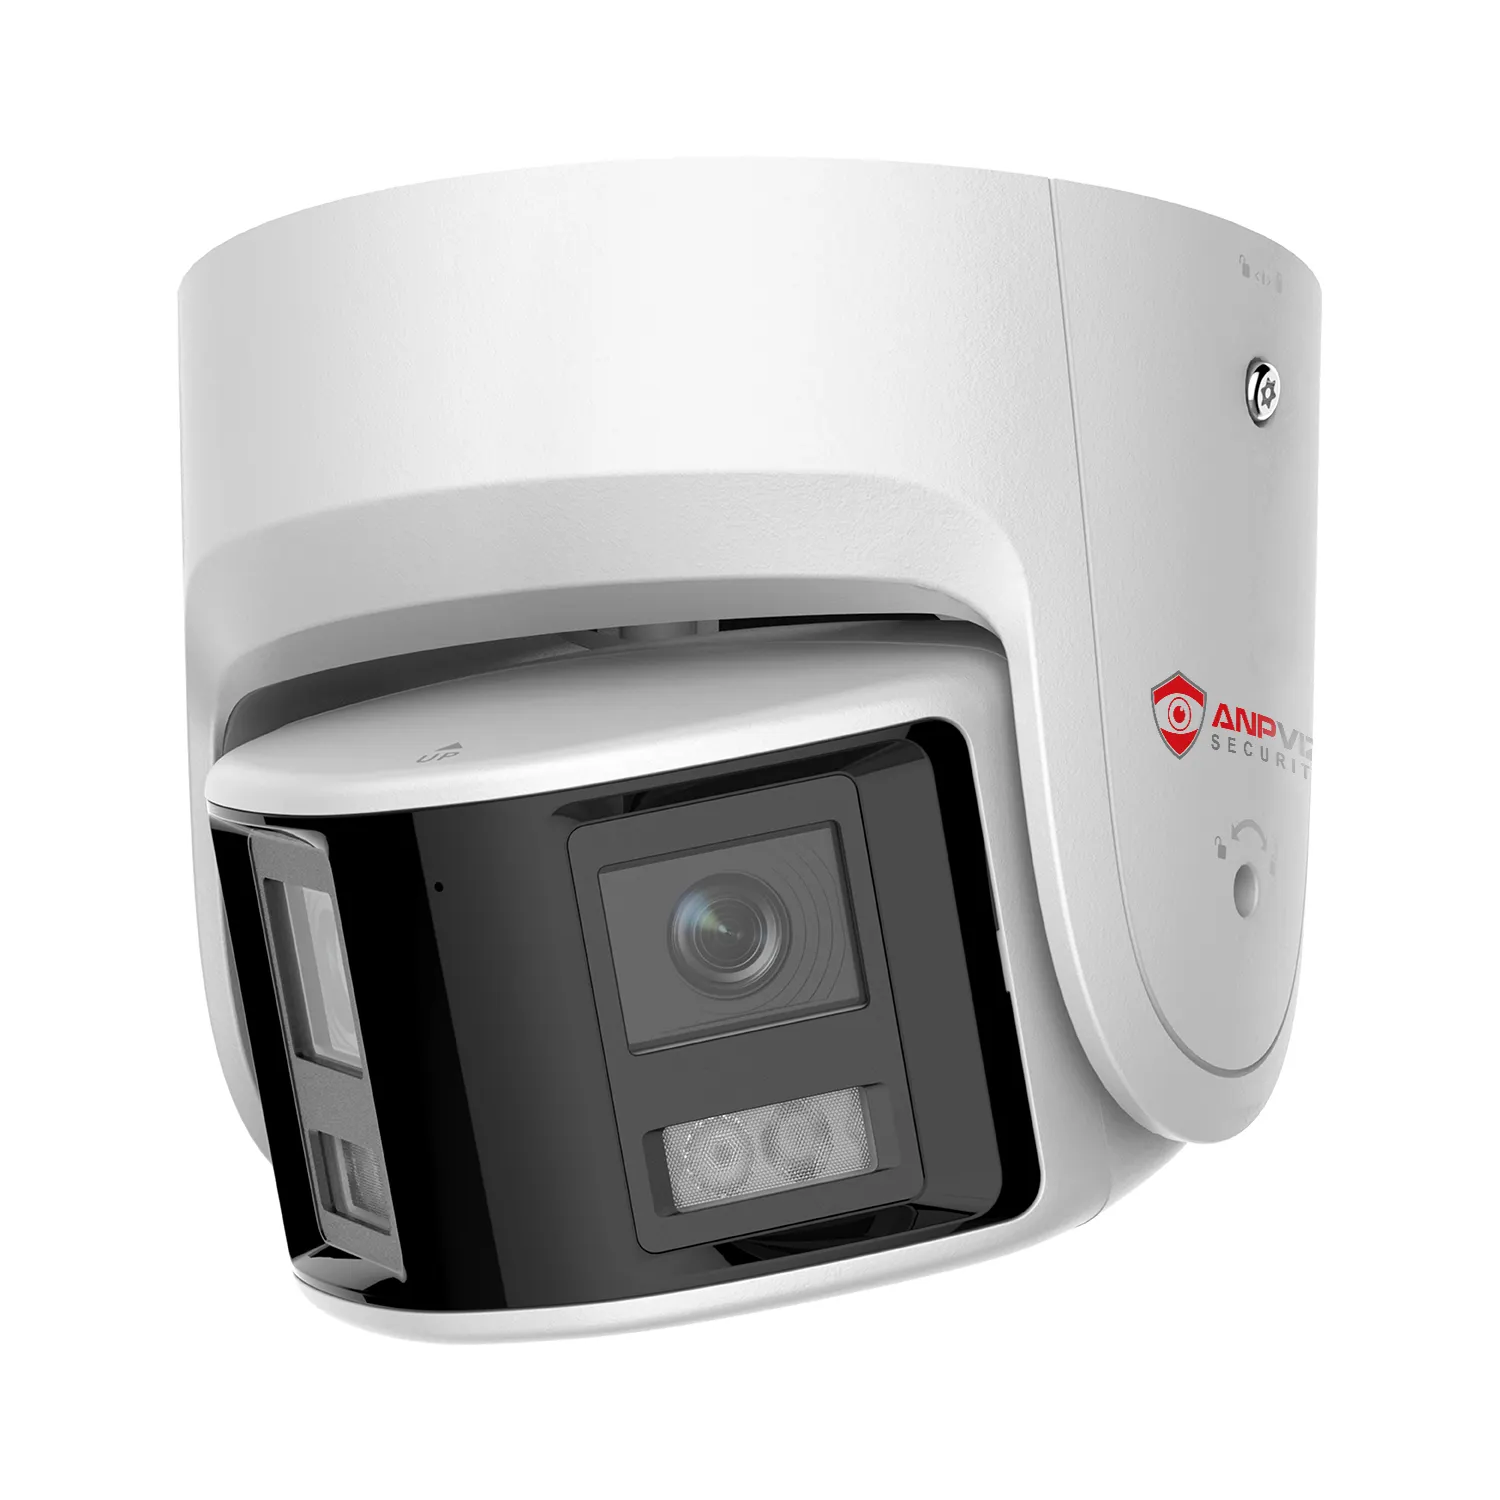 Anpviz POE IP камера видеонаблюдения 6MP видеорегистратор с двумя камерами панорамная камера 180 градусов изображение человека/транспортное средство обнаружения звук и мигание сигнализация 2-way talk